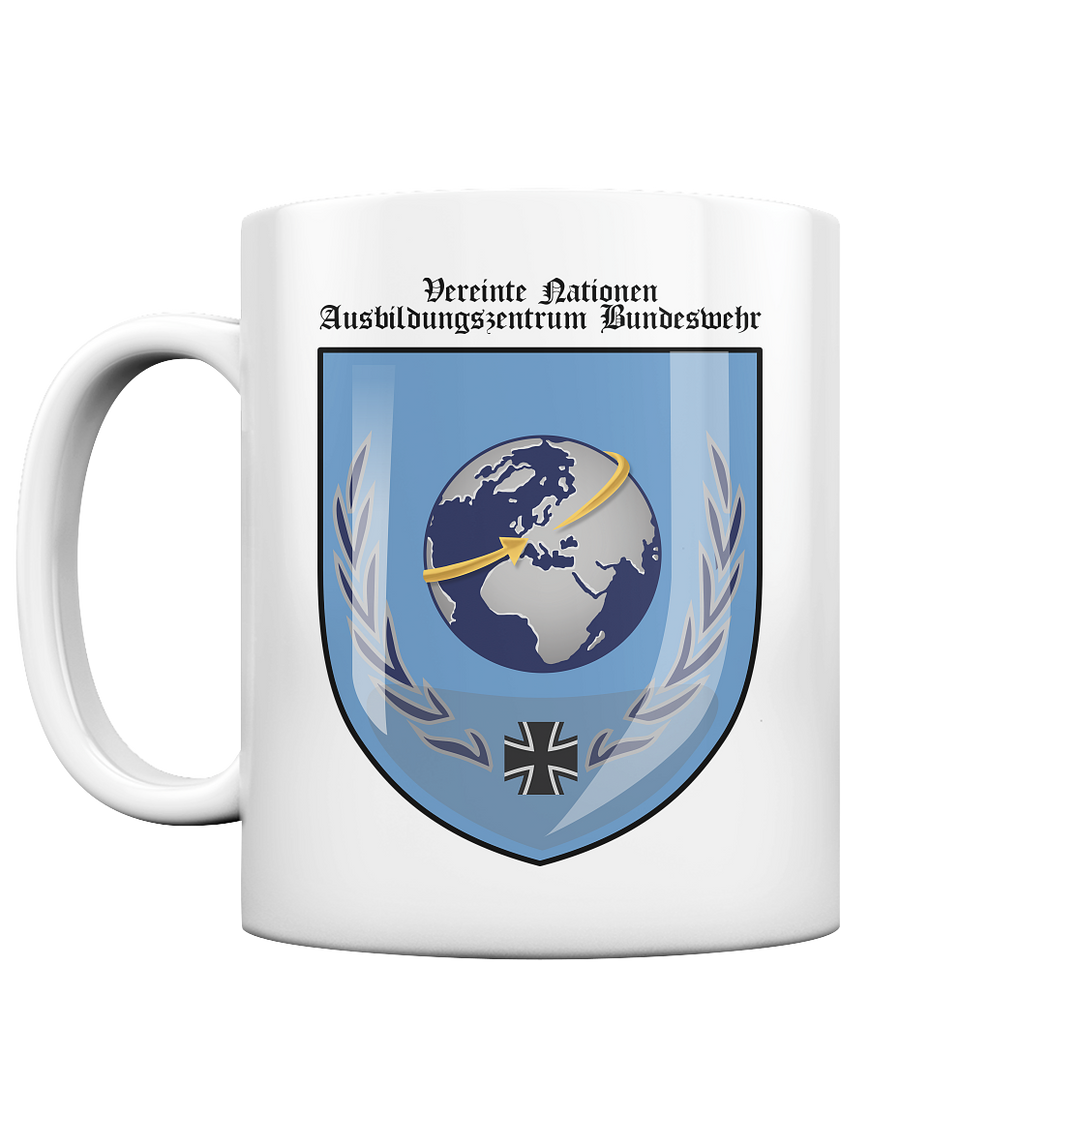 "Vereinte Nationen Ausbildungszentrum Bundeswehr" - Tasse glossy